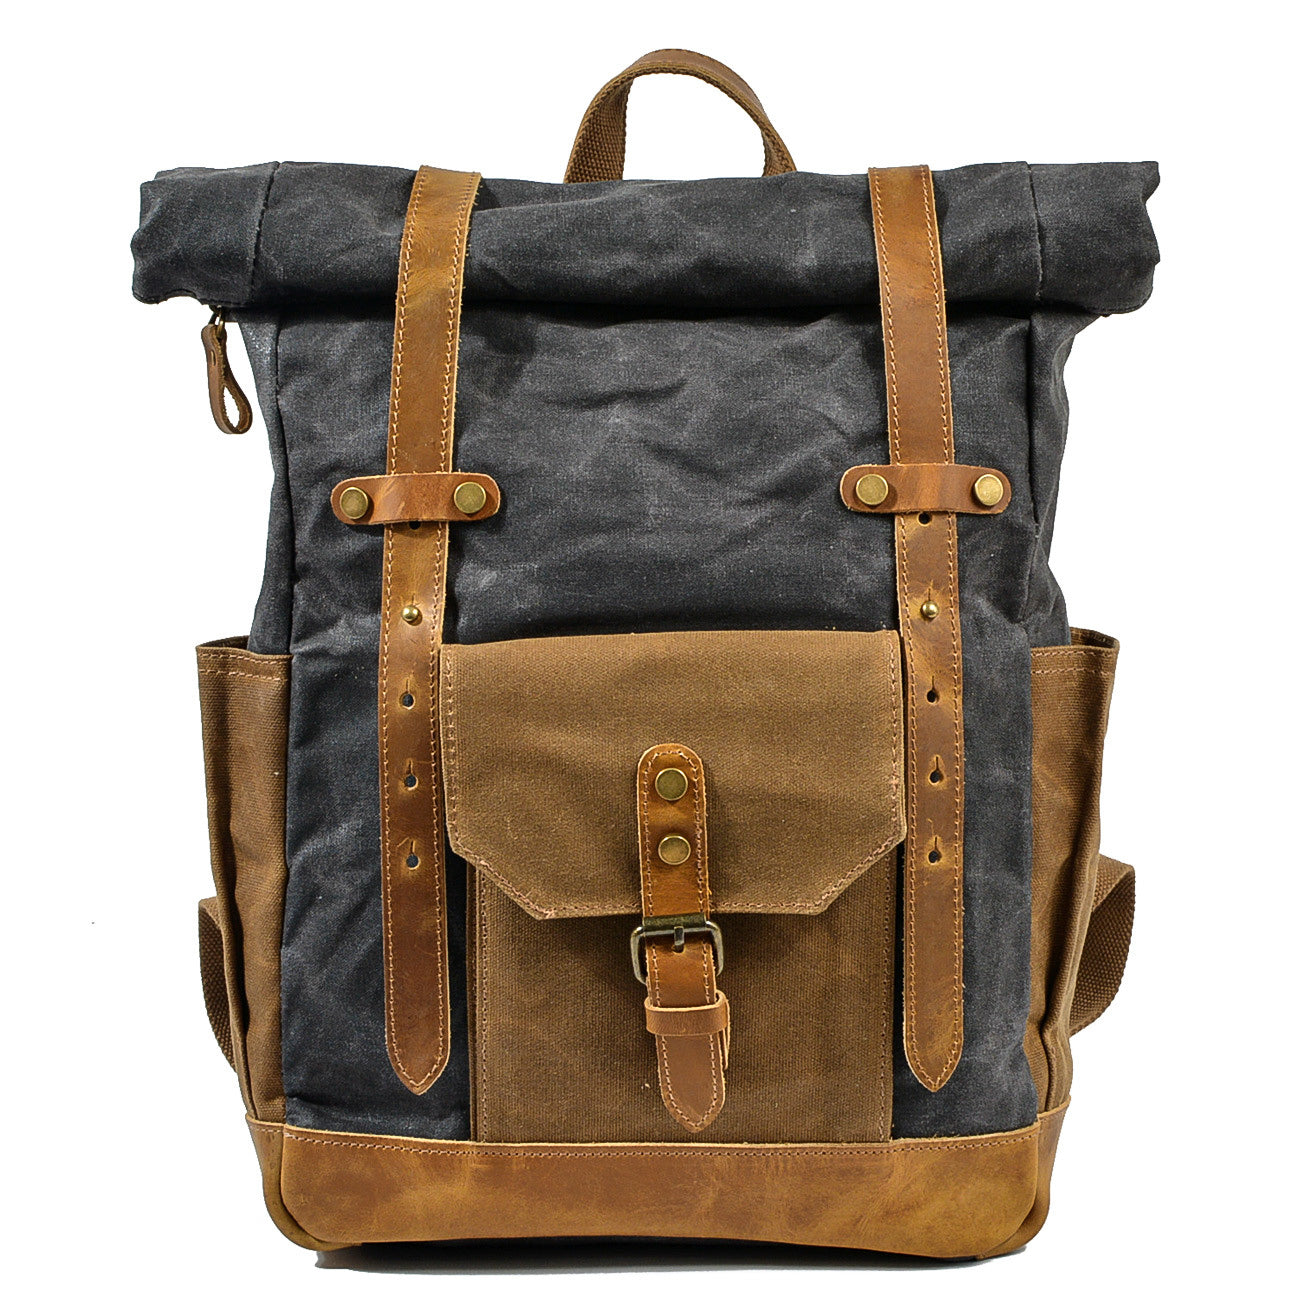 waterproof-roll-top-backpack-uk-02.jpg